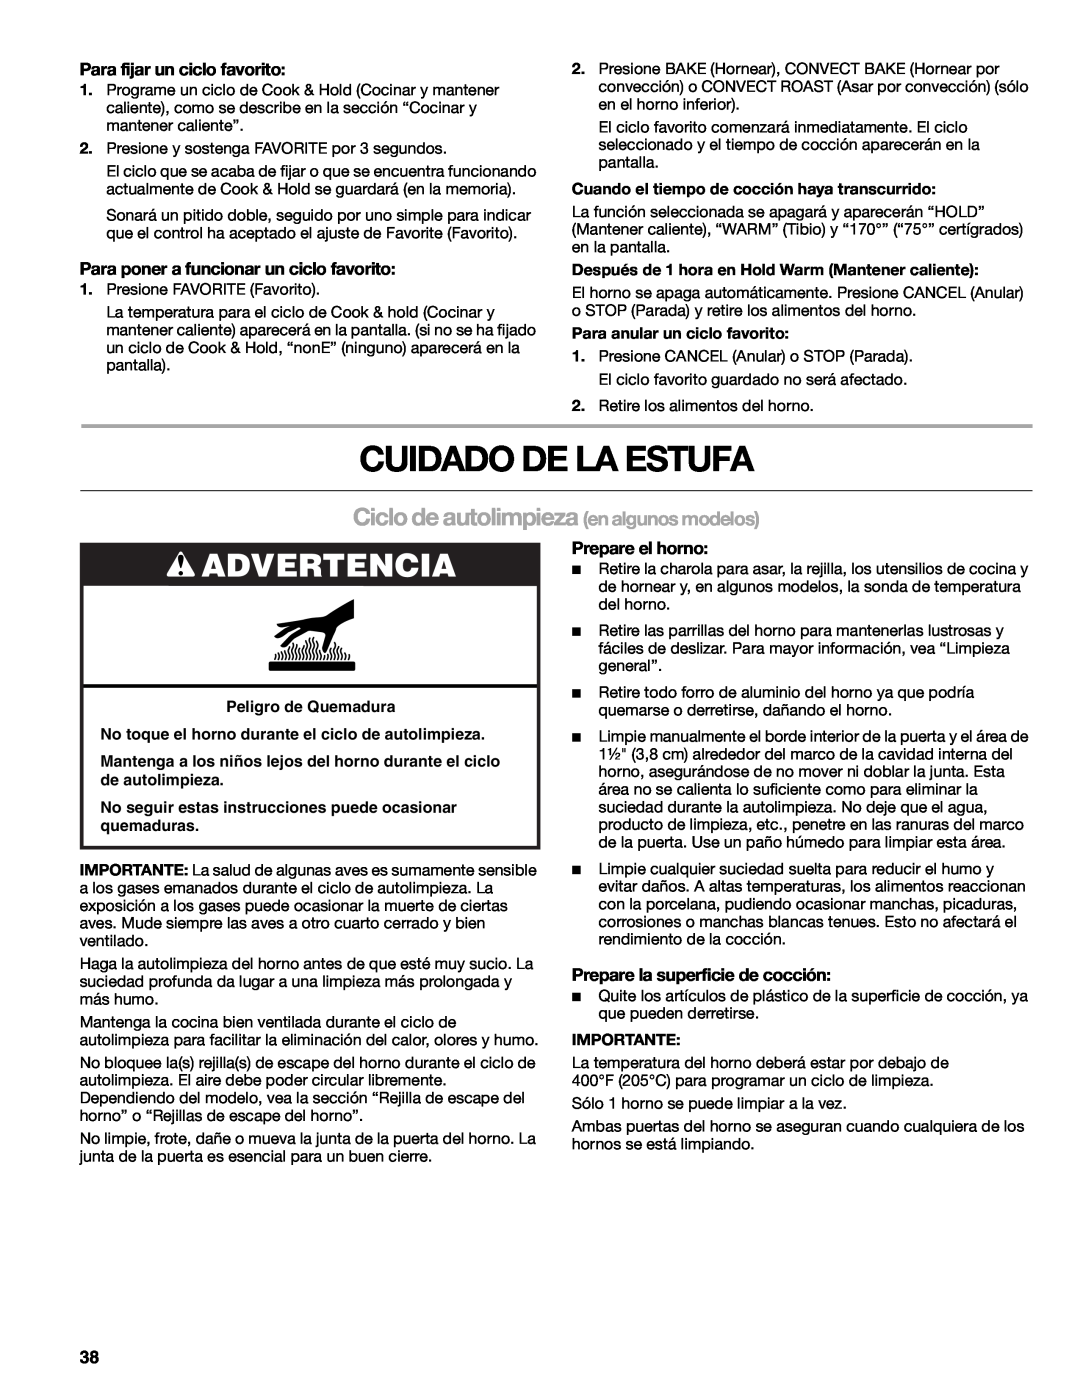 Kenmore W10166292A manual Cuidado De La Estufa, Ciclo de autolimpieza en algunos modelos, Advertencia, Prepare el horno 